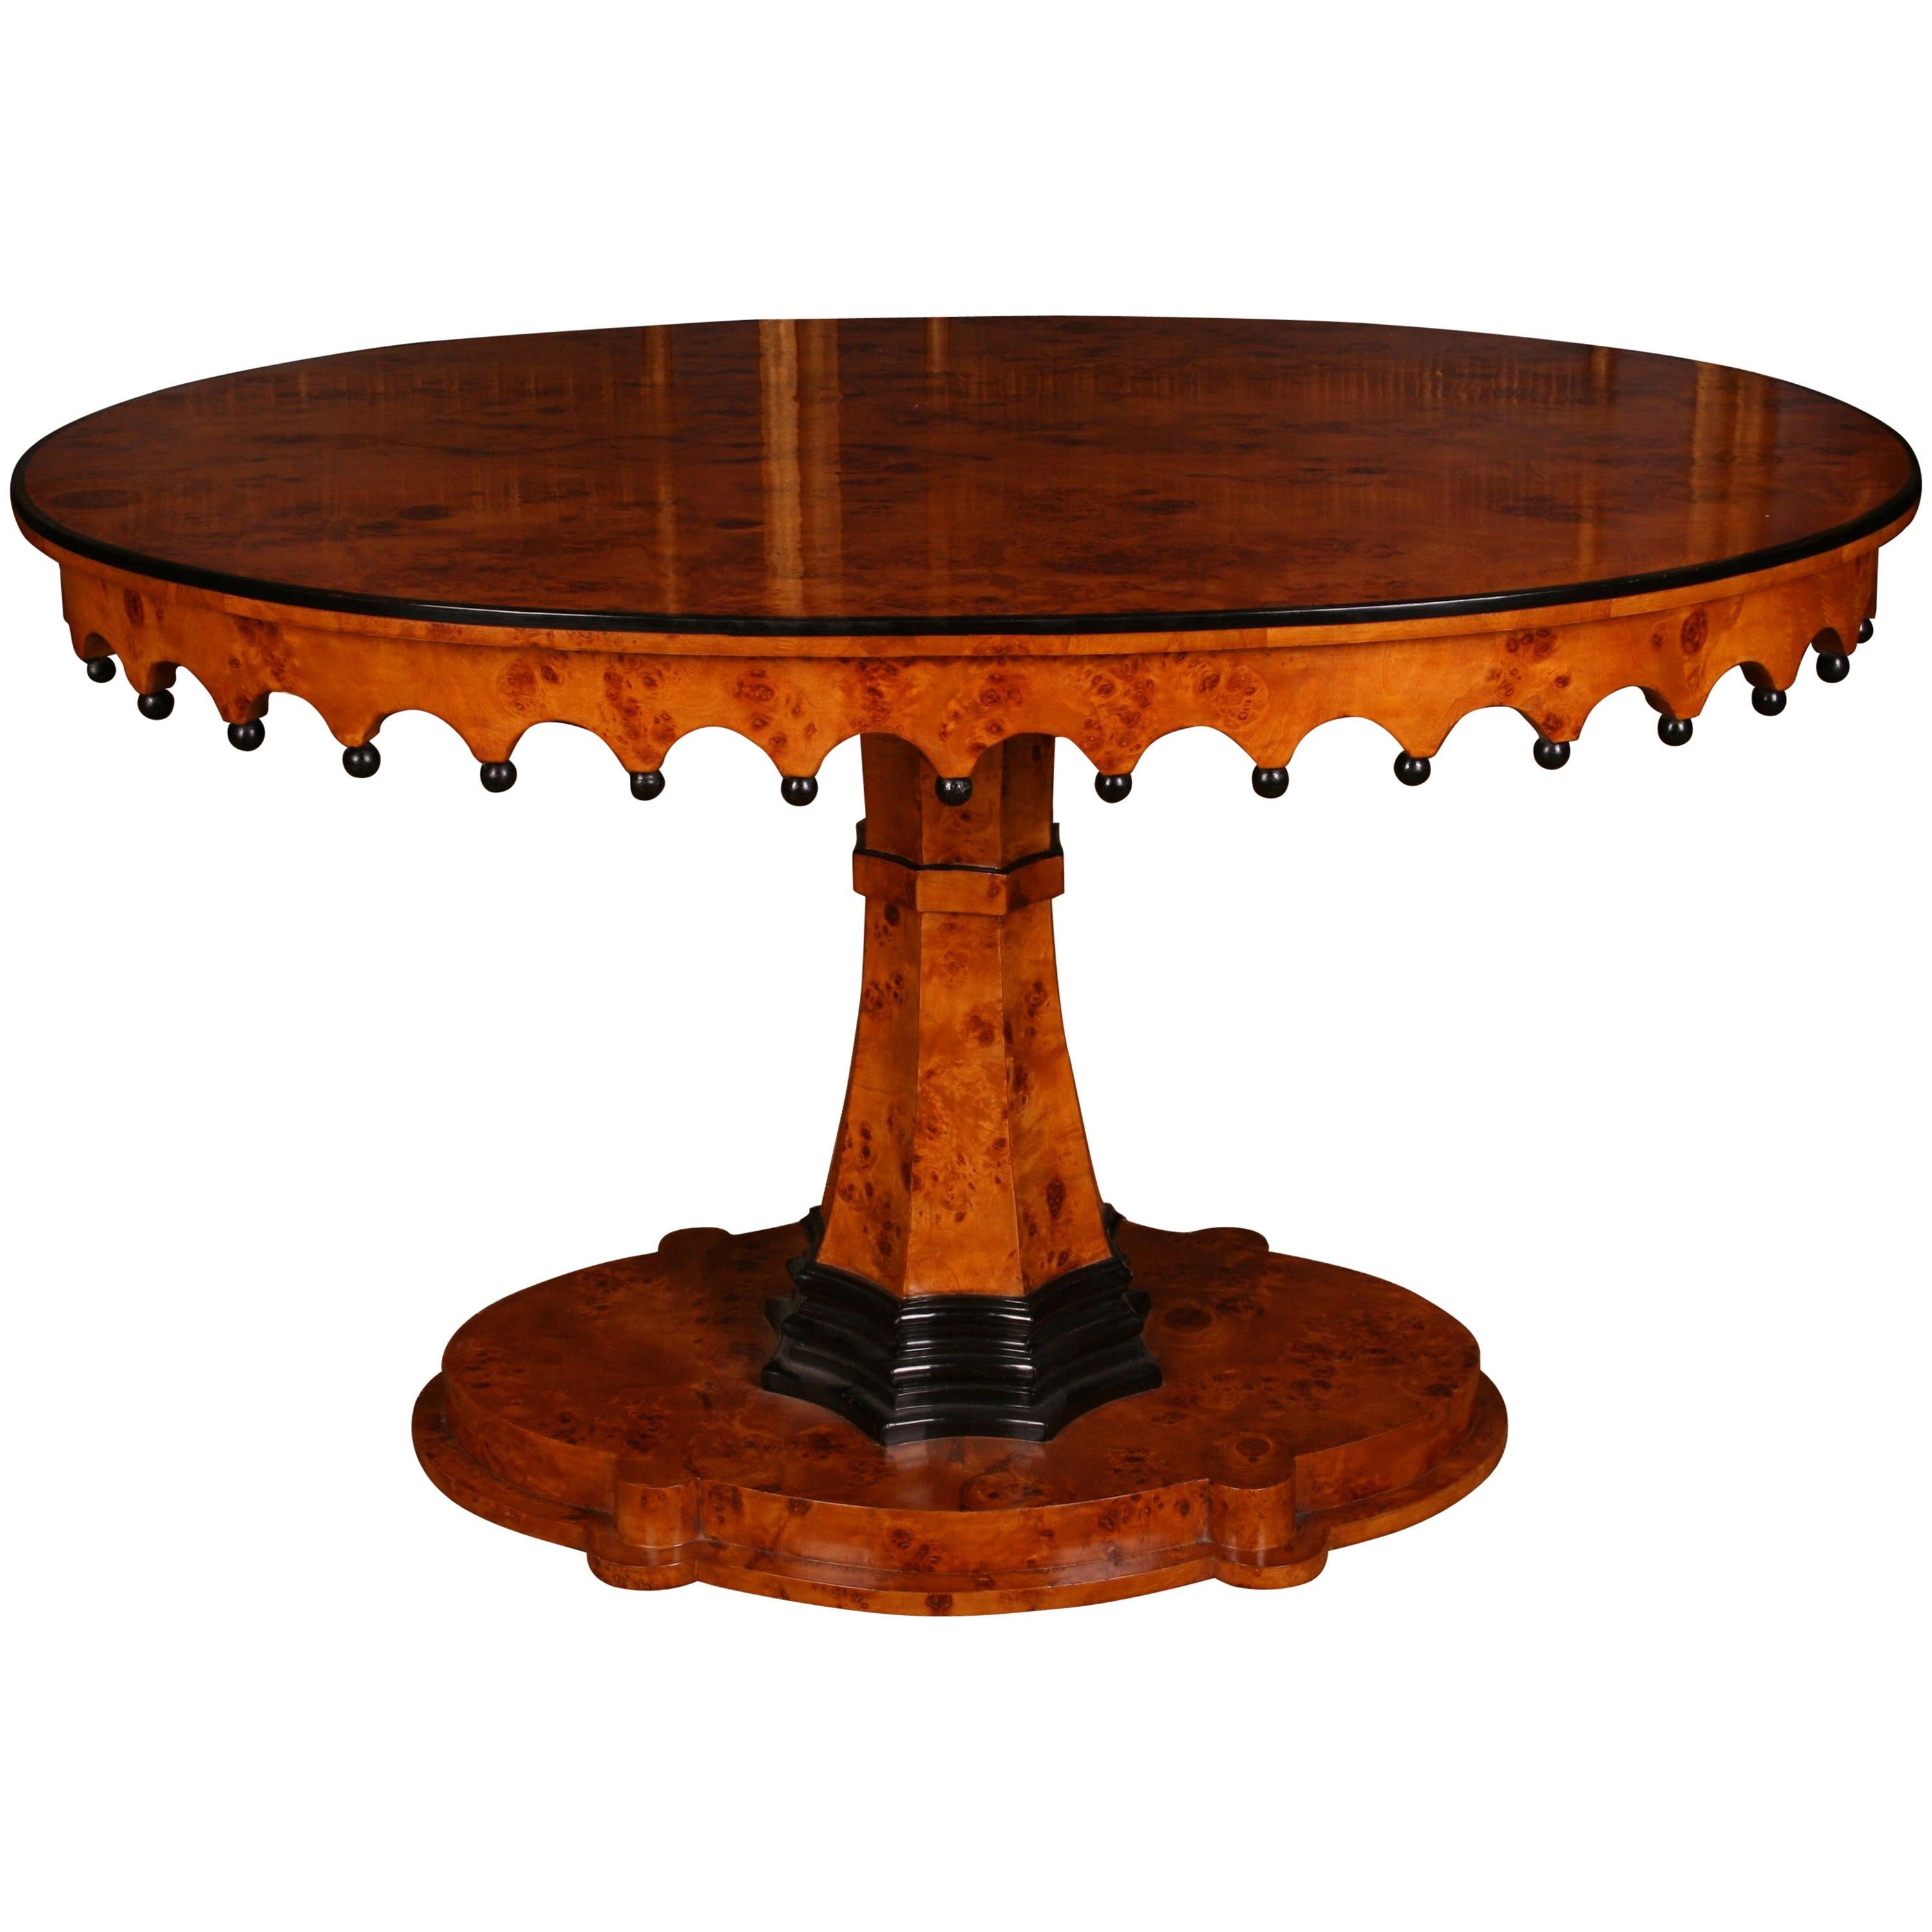 Table ovale en bois de style Biedermeier du XXe siècle